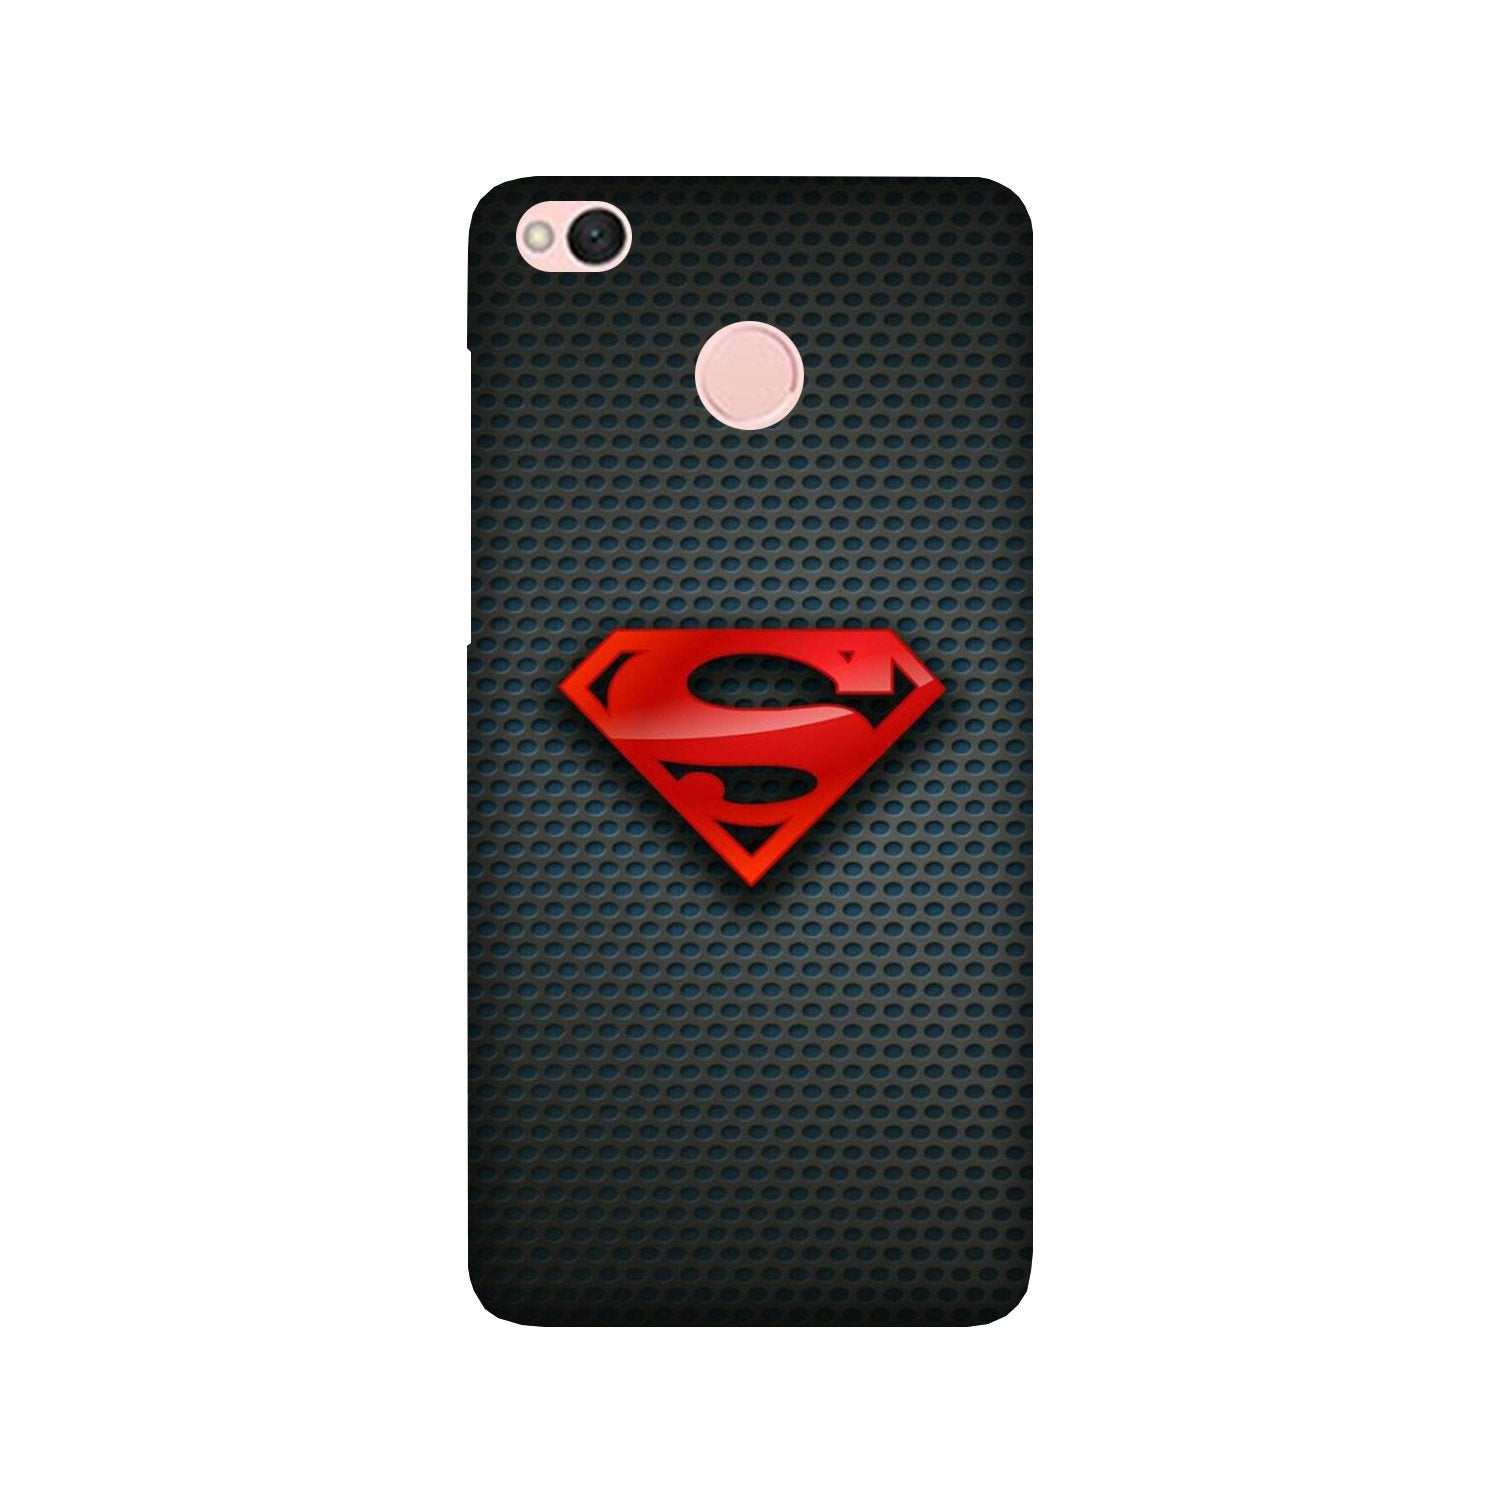 Superman Case for Redmi 4 (Design No. 247)